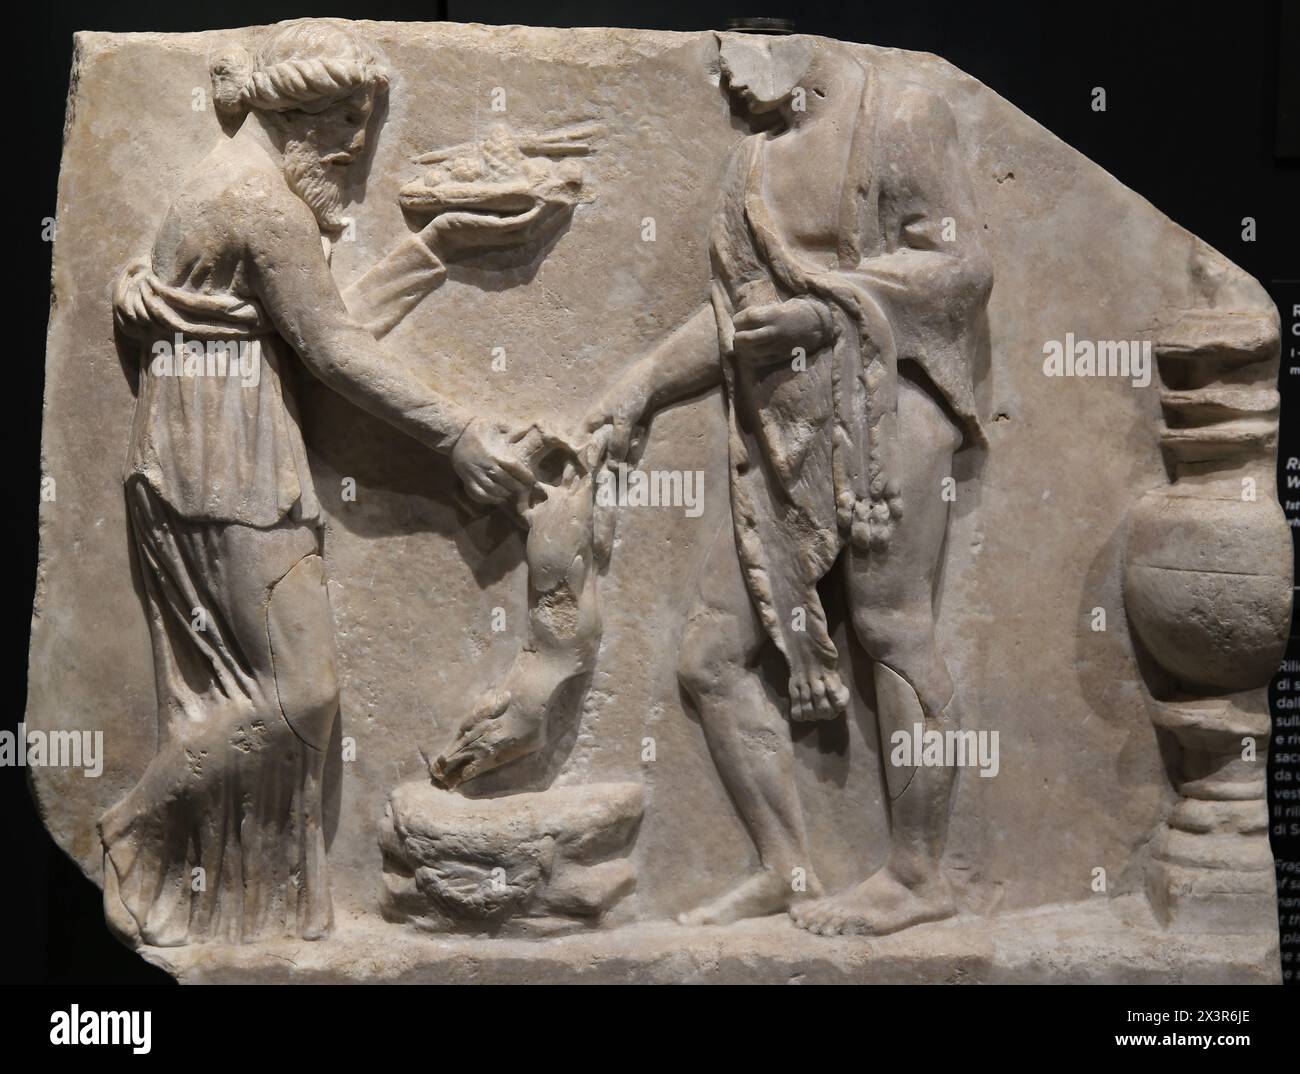 Soulagement avec une scène de sacrifice. 1er-2ème siècle après JC. (?). Marbre blanc. Musée archéologique de Turin. Italie. Banque D'Images